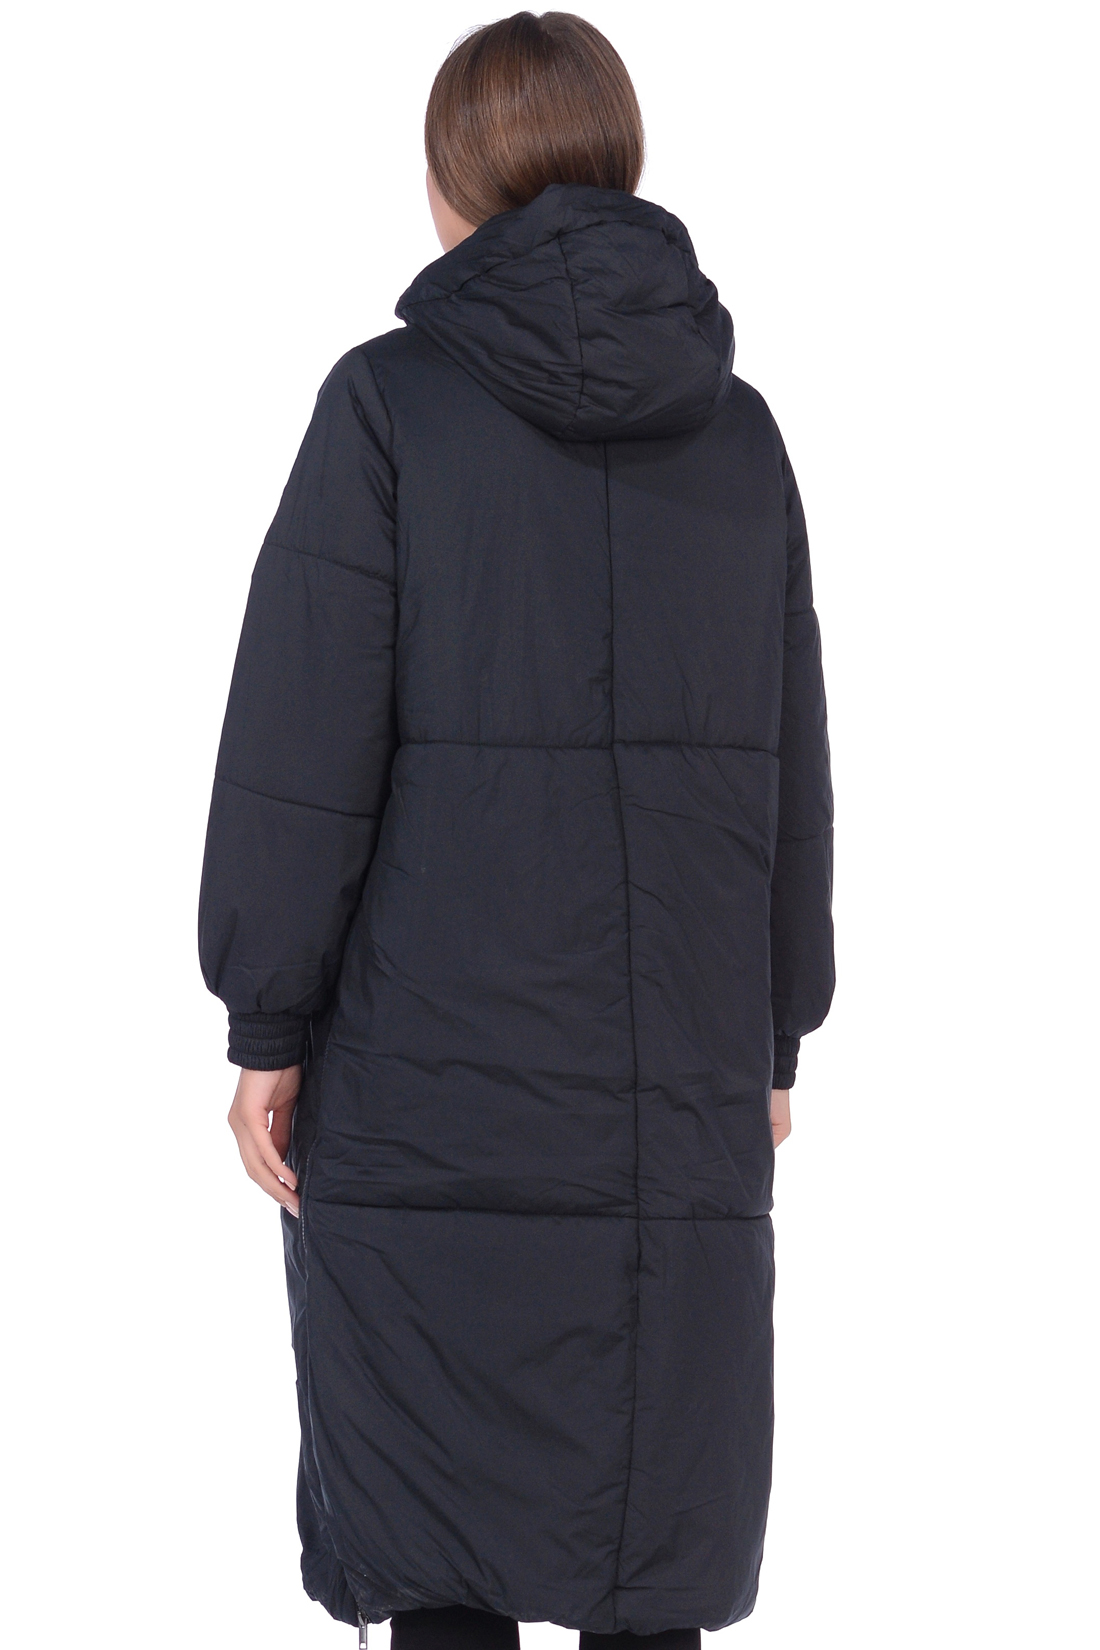 Куртка с молниями по бокам (арт. baon B038530), размер L, цвет черный Куртка с молниями по бокам (арт. baon B038530) - фото 2